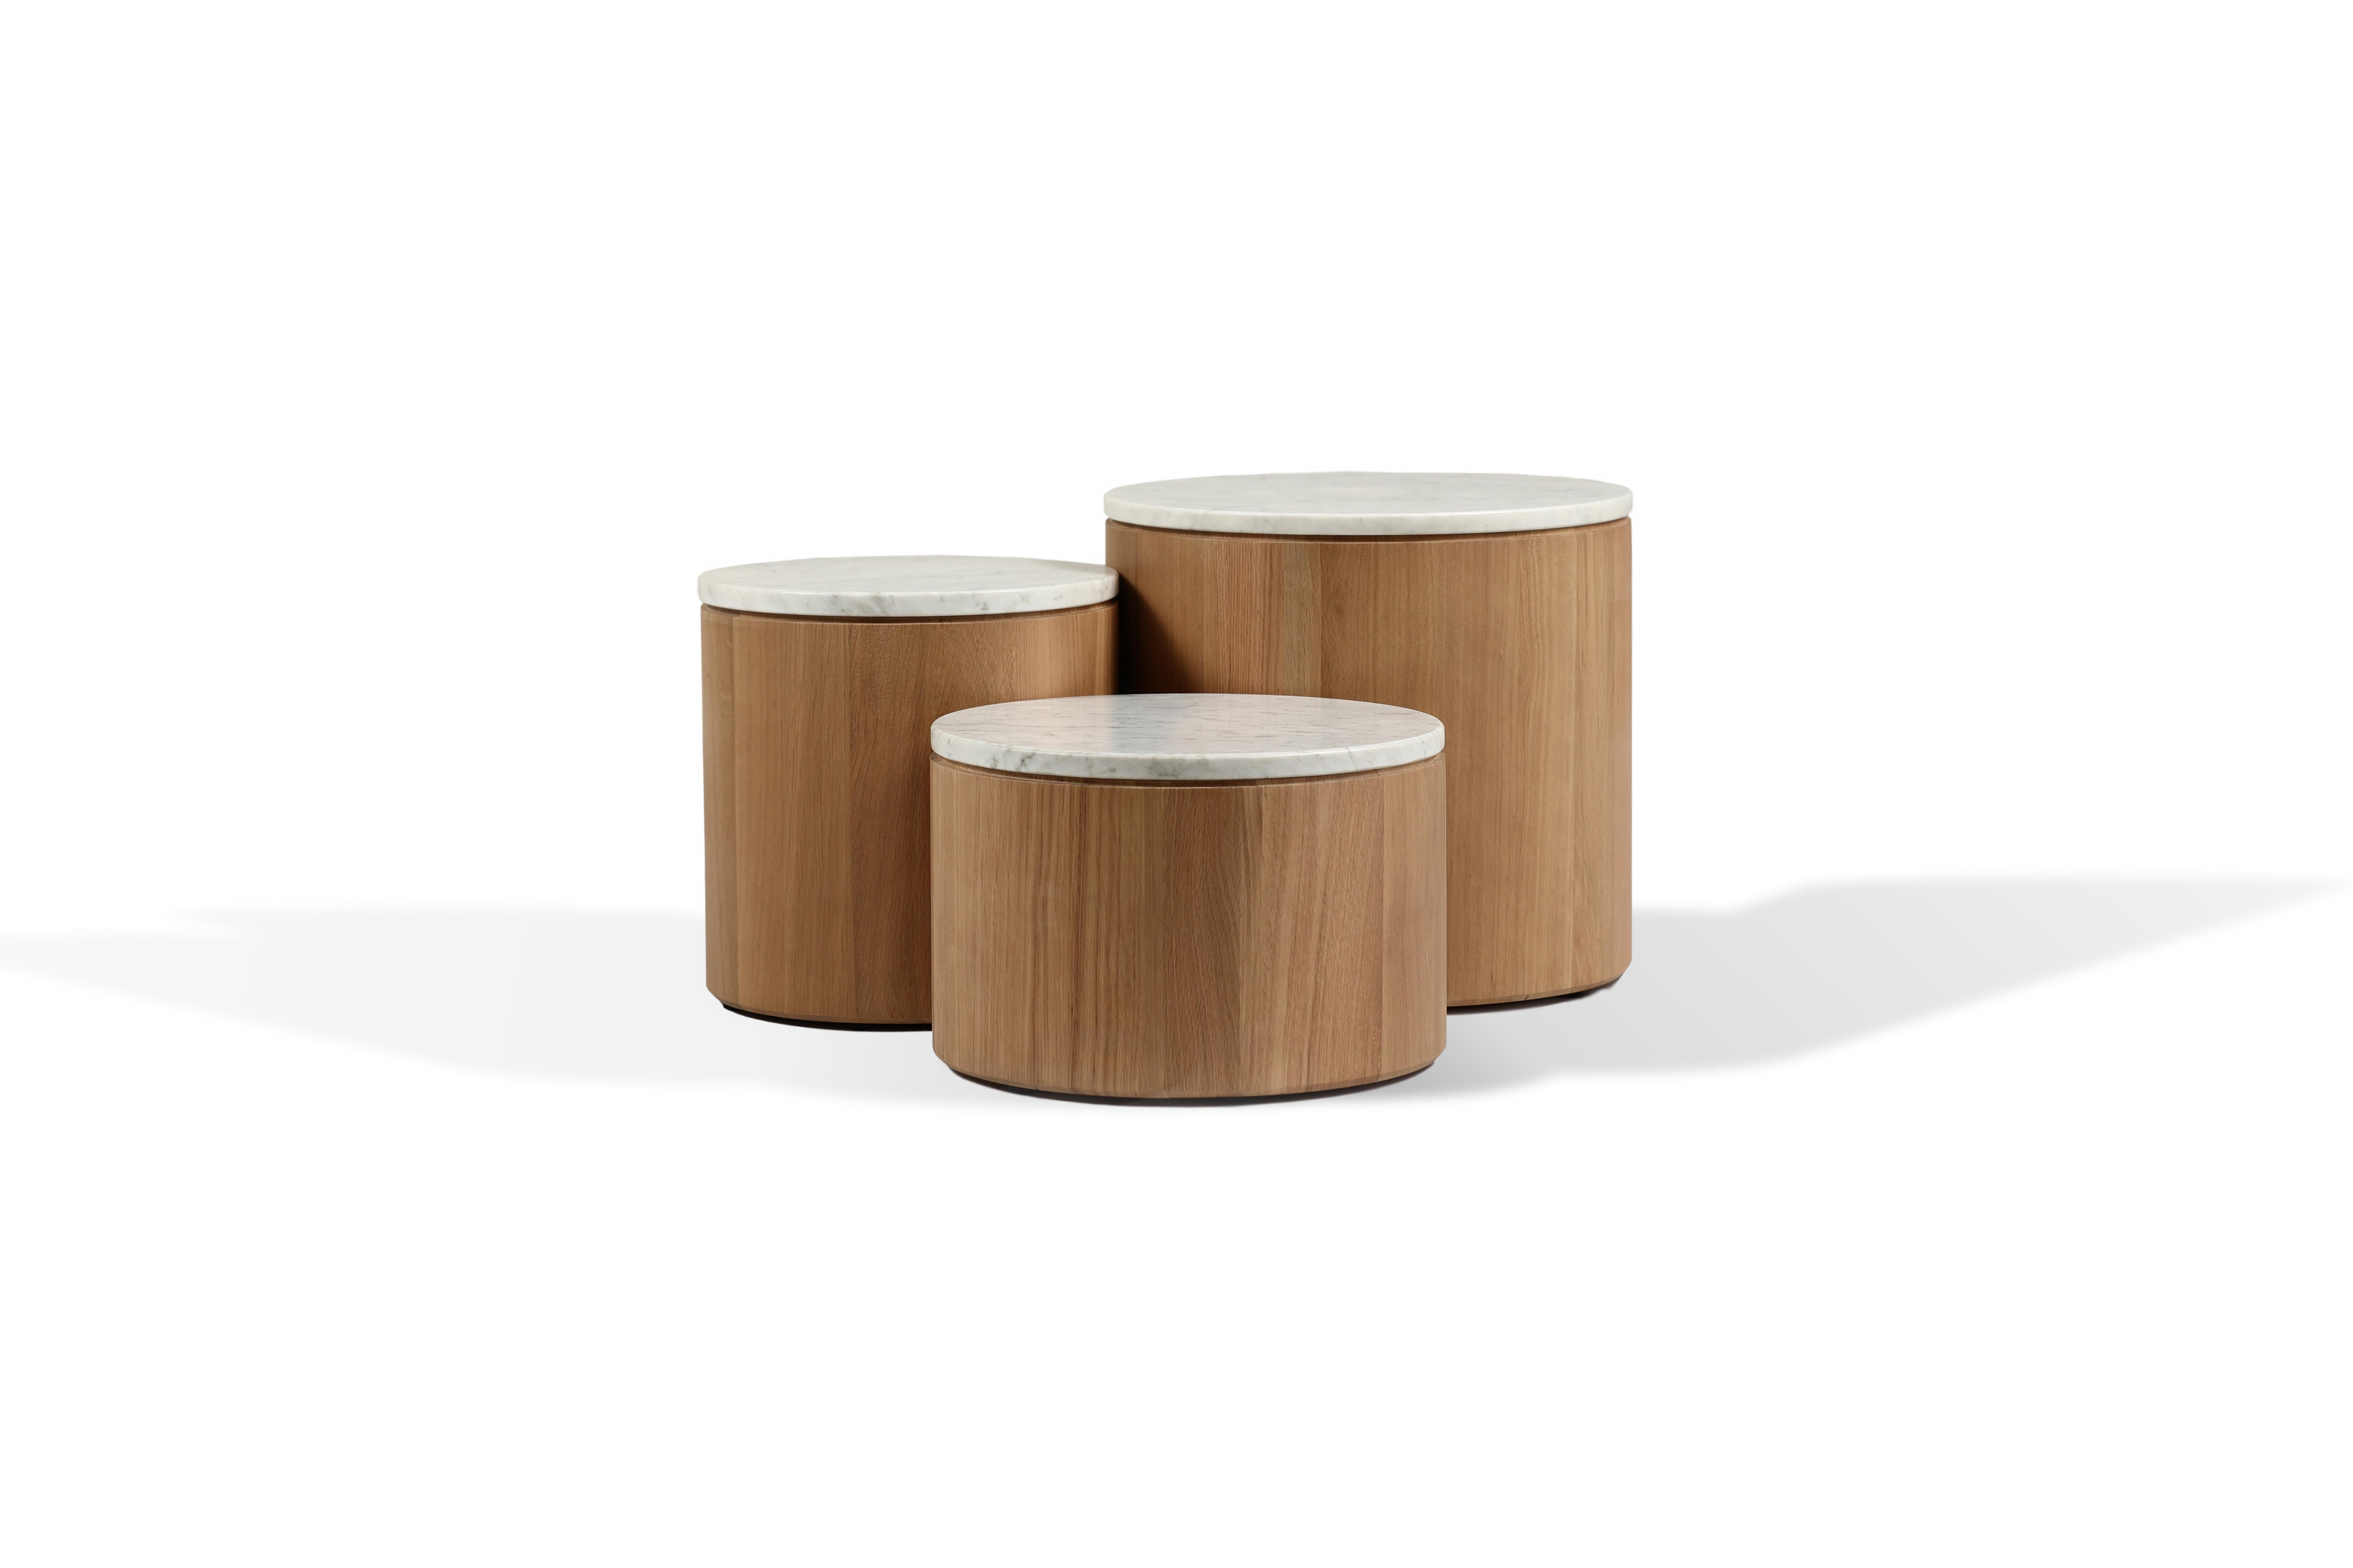 Dugtree est un concept composé de 3 tables basses de différentes tailles et hauteurs. La géométrie des produits conserve la même rondeur des pieds propres à la collection Oak Saga. 
 
Le sommet est constitué d'un cercle de marbre soigneusement posé